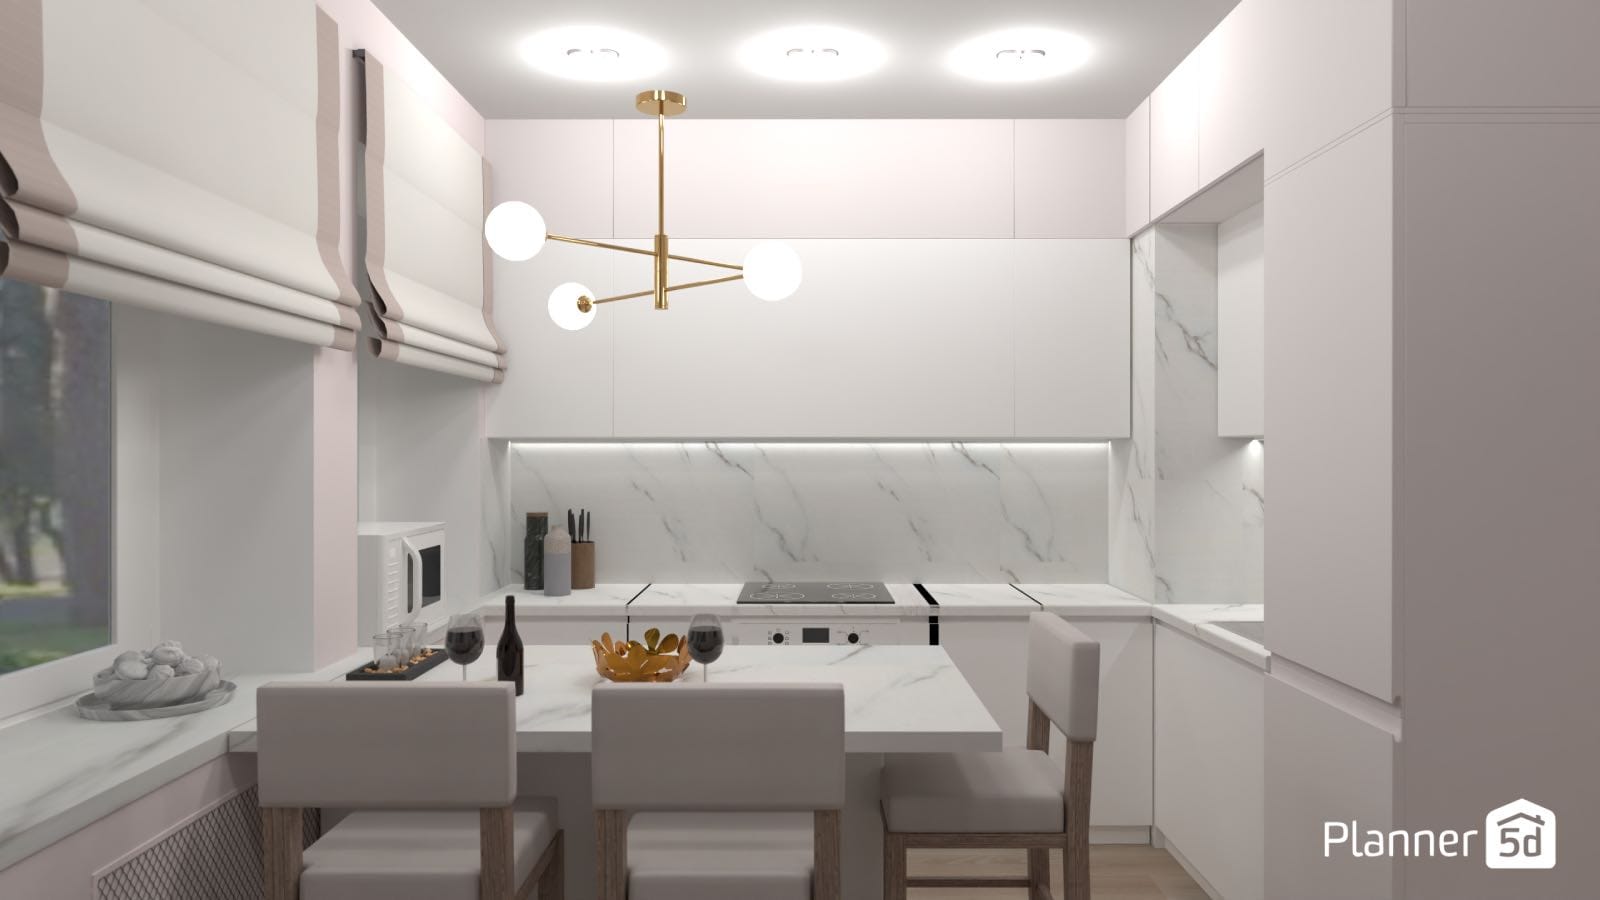 cocina de diseño minimalista con barra para comer, render 3d planner 5d